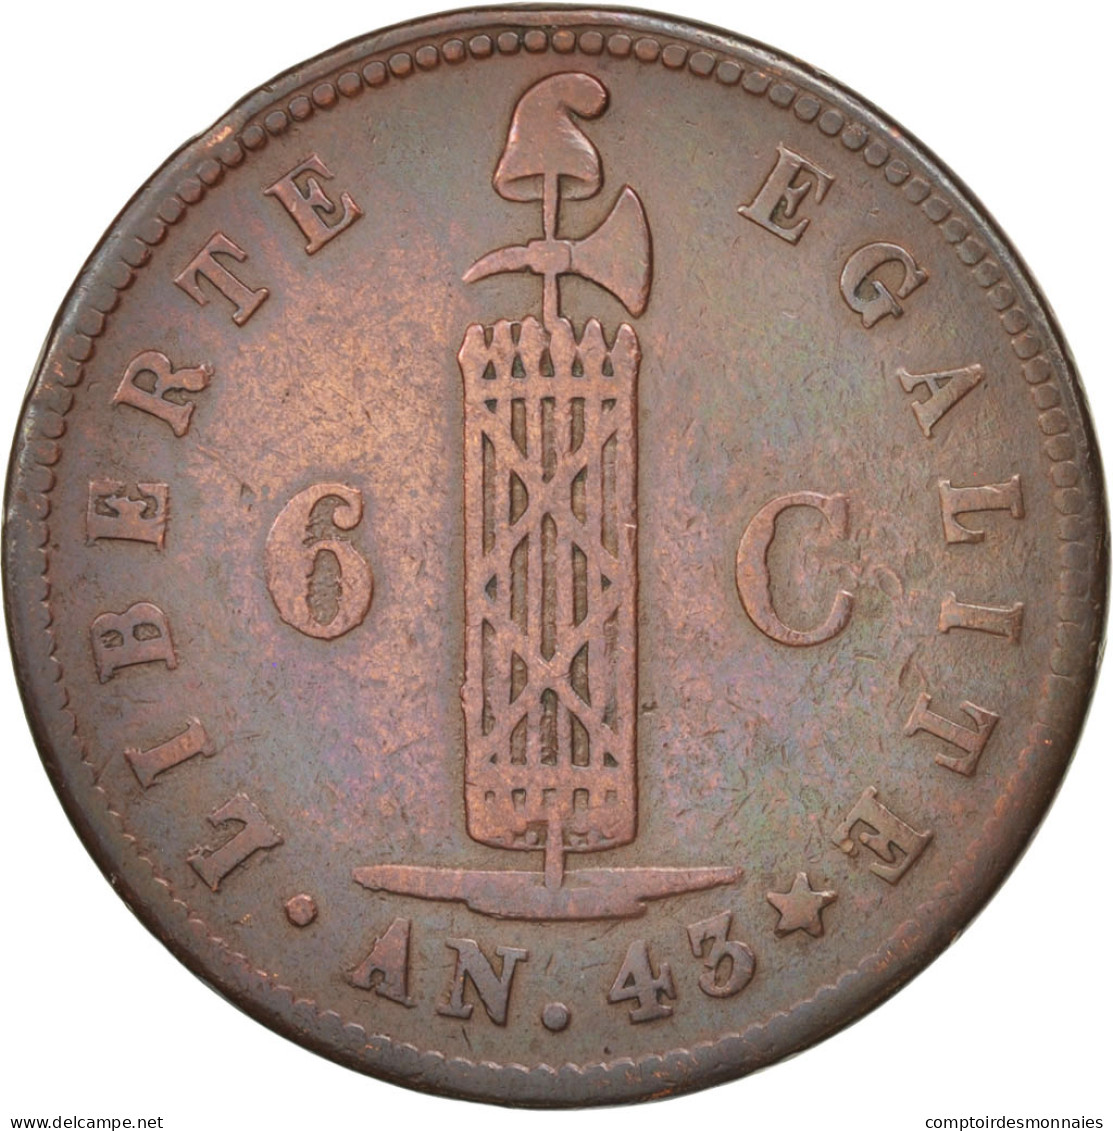 Monnaie, Haïti, 6 Centimes, 1846, TTB, Cuivre, KM:28 - Haití